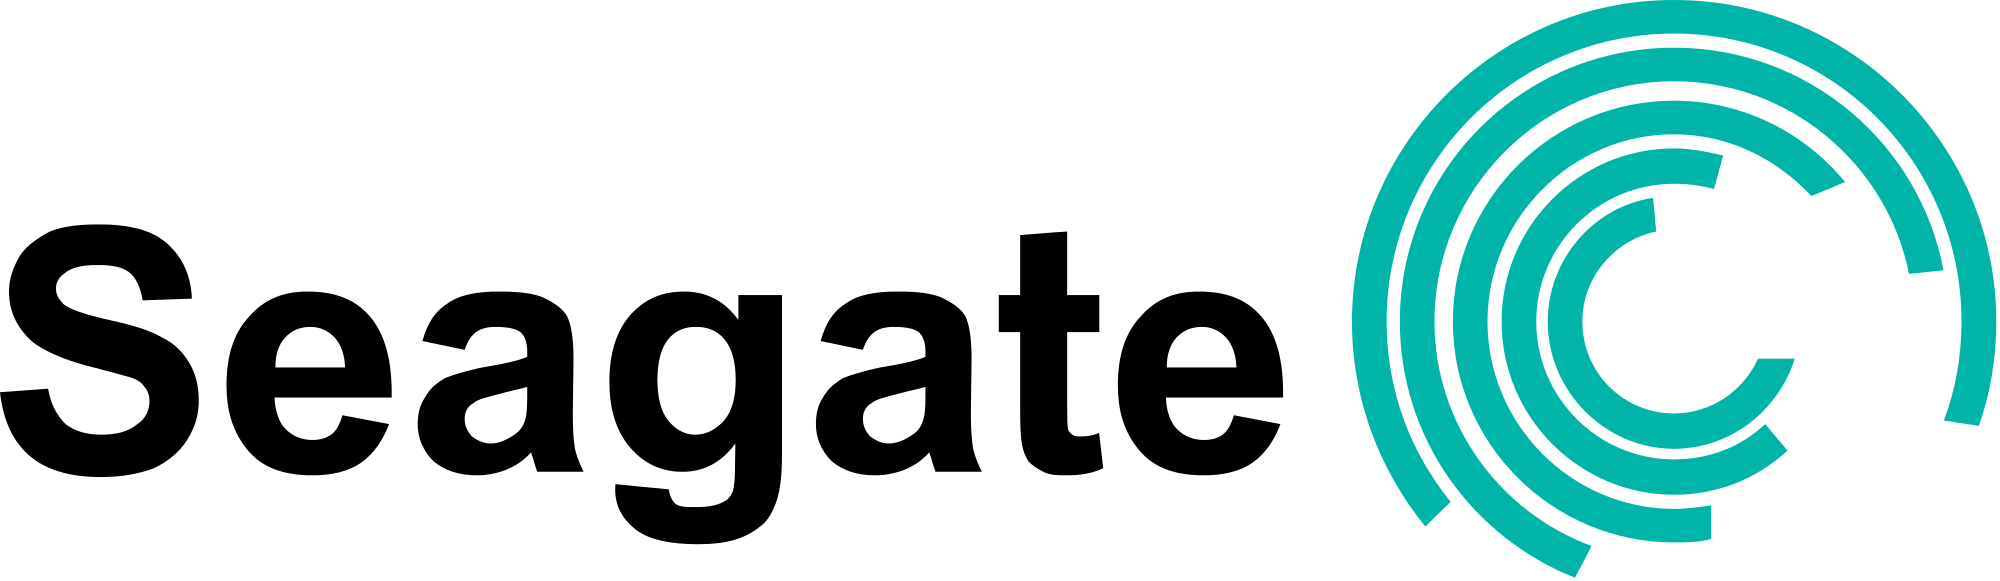 Seagate harddisk